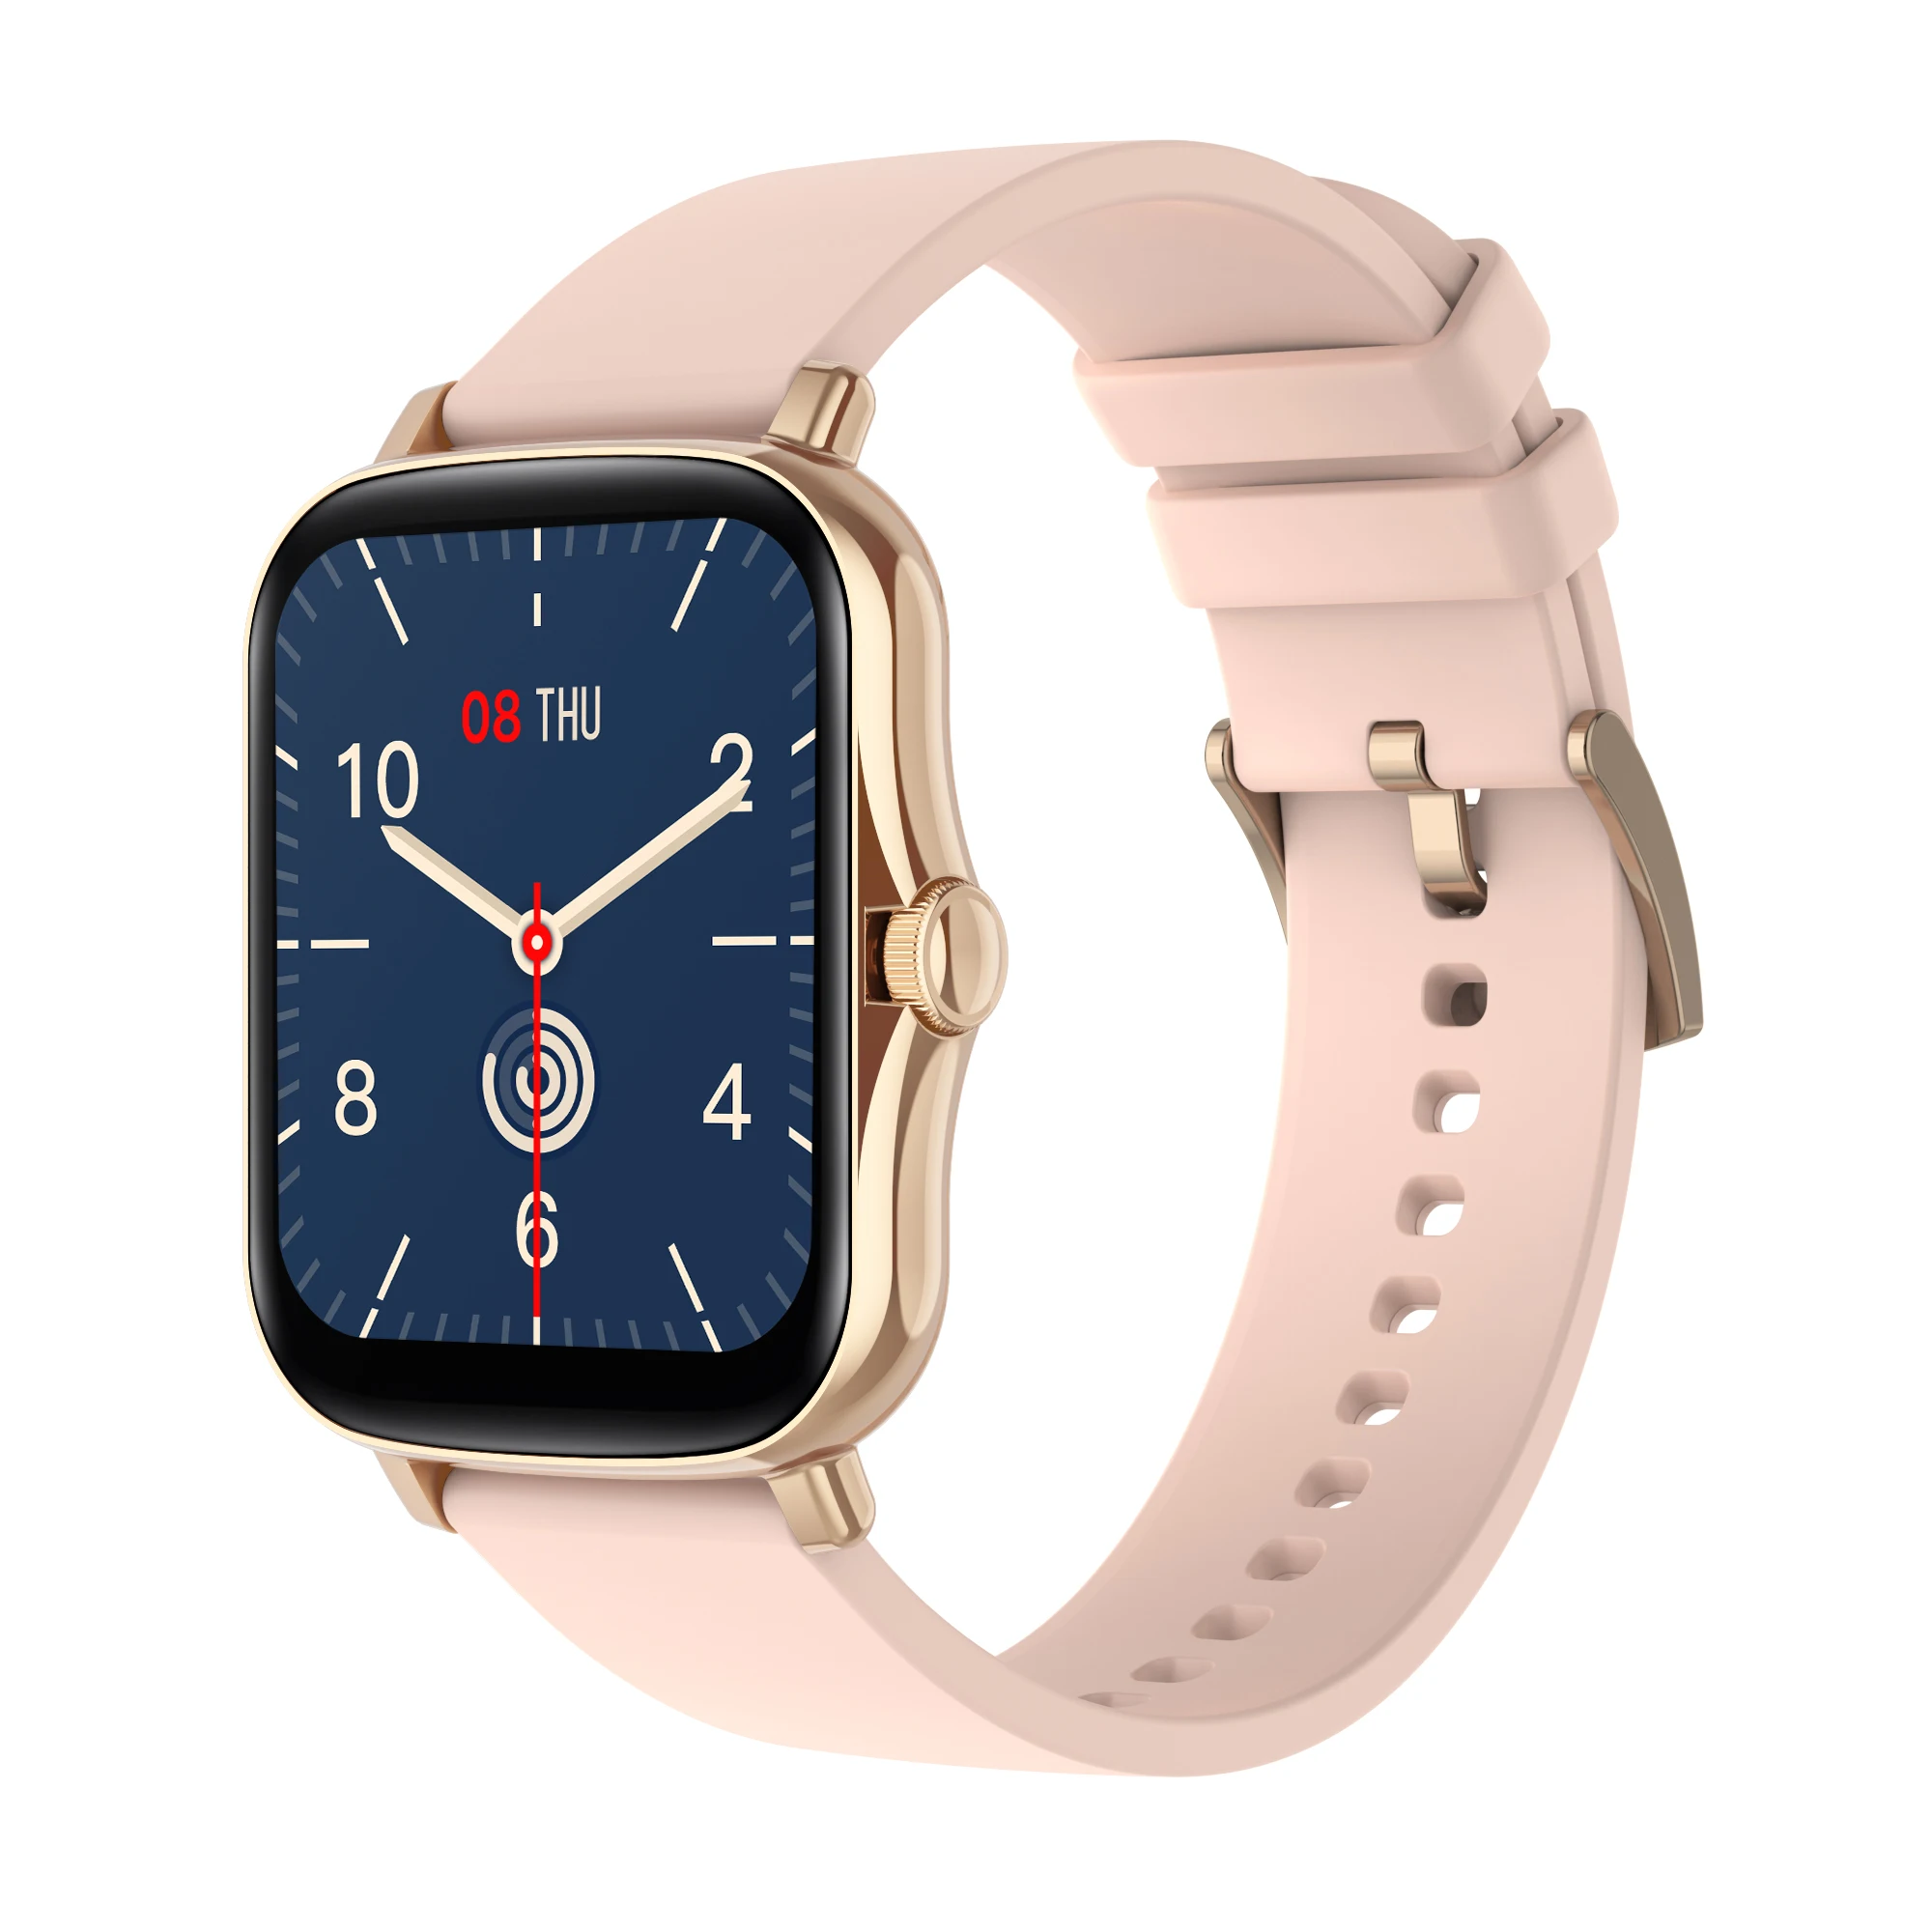 

Orologio-smart wocth di sincronizzazione fitness smart watch software donna uomo smartwatch